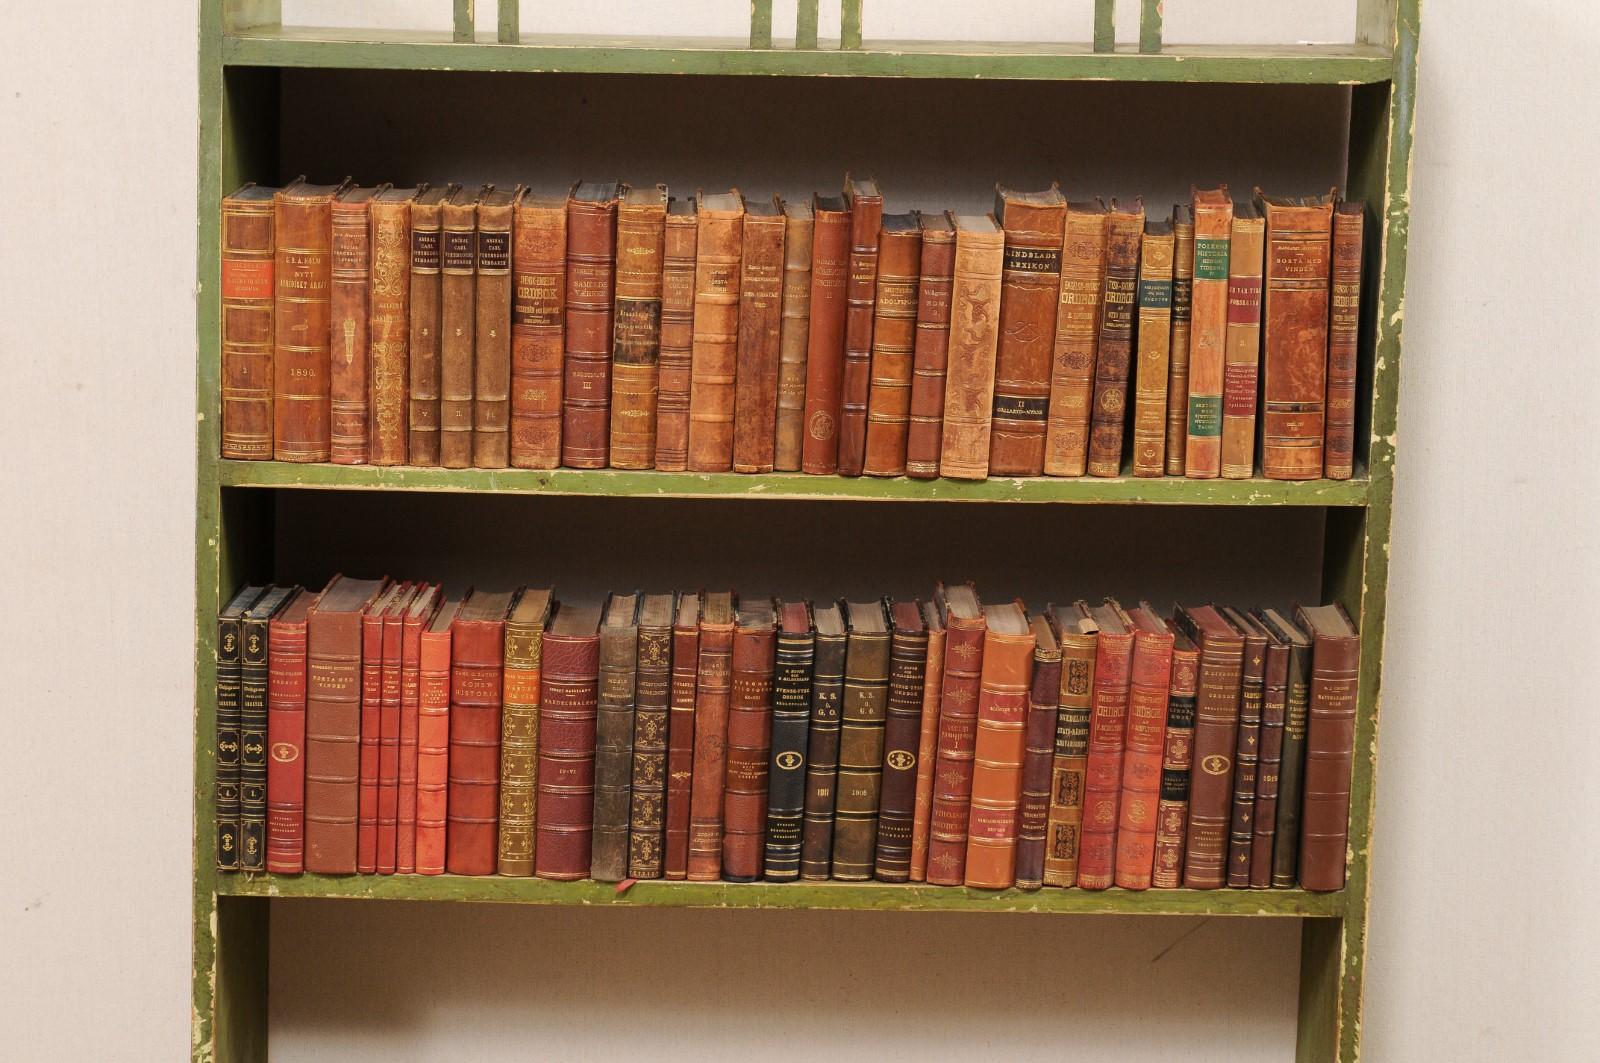 Eine attraktive Sammlung von 100 schwedischen antiken, in Leder gebundenen Büchern. Dieses Set von Literaturbüchern aus Schweden aus den 1920er Jahren ist in Ledereinbände mit verschiedenen warmen Farbtönen und Blattgoldprägungen gehüllt. Die